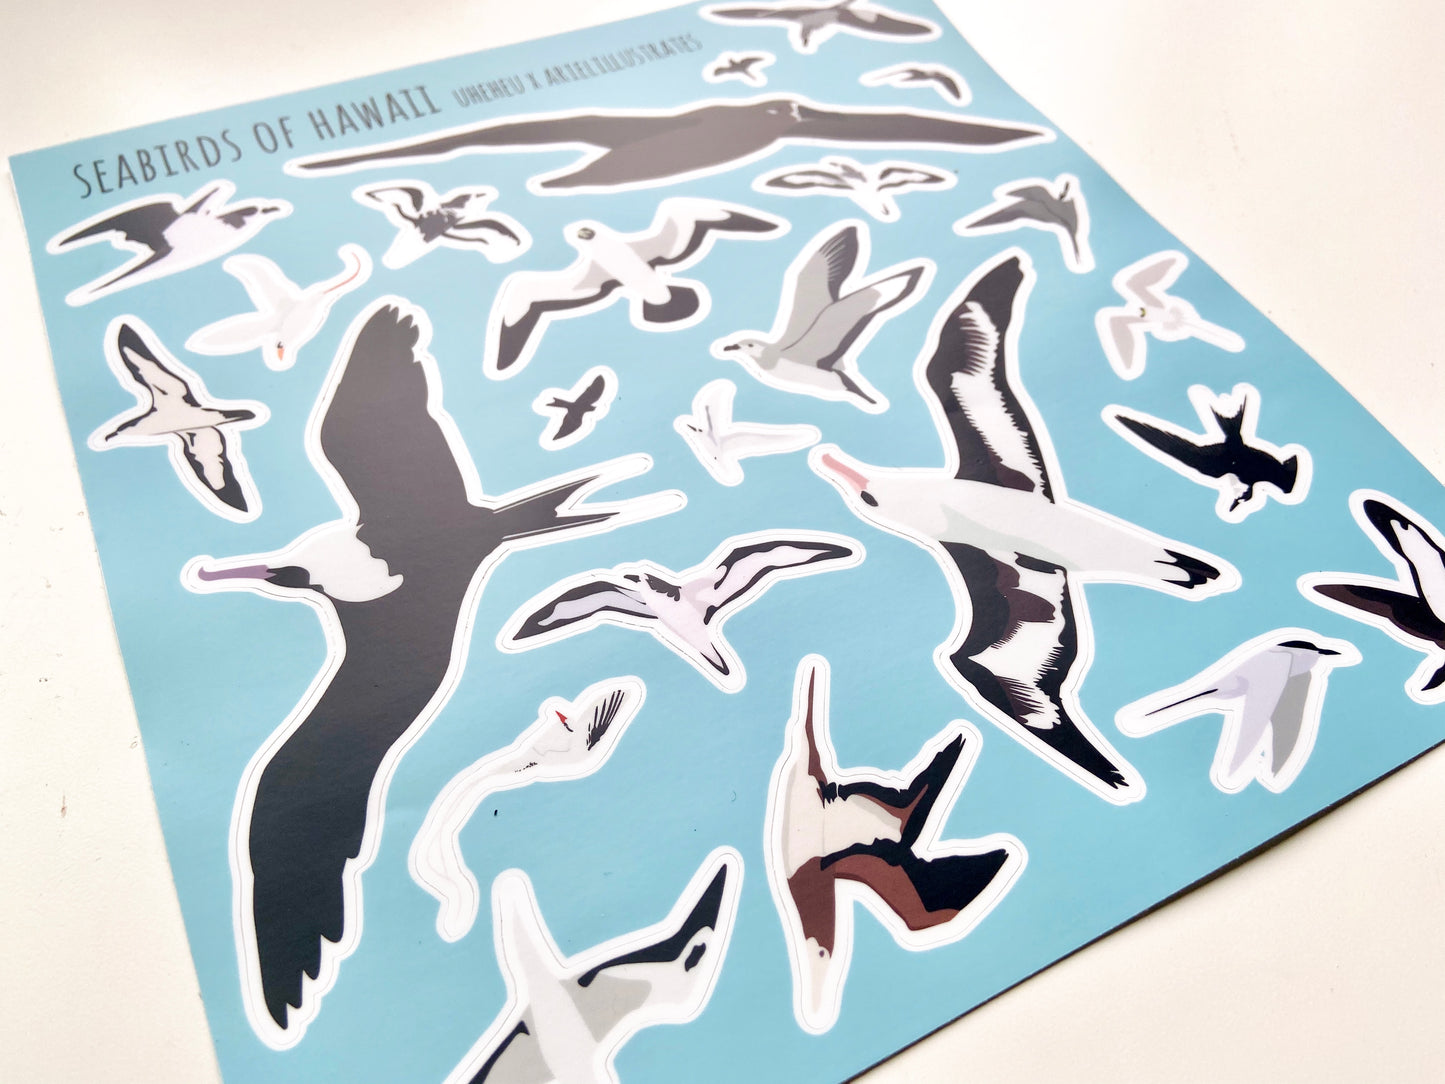 Hawaii Seabird Sticker Sheet